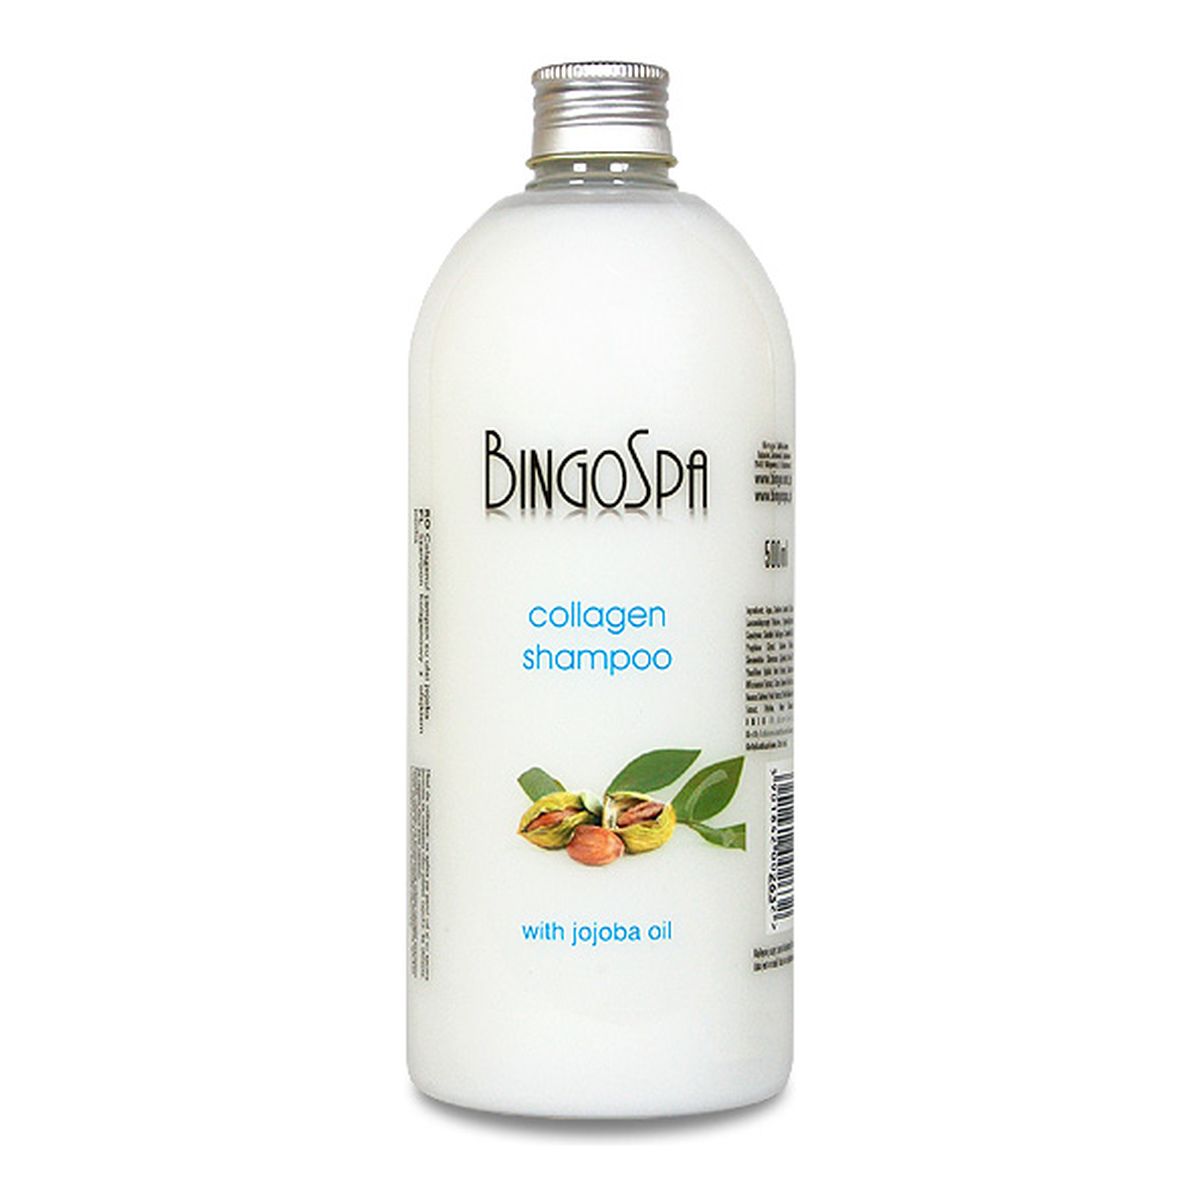 BingoSpa Collagen Shampoo Kolagenowy Szampon Do Włosów Z Olejkiem Jojoba 500ml